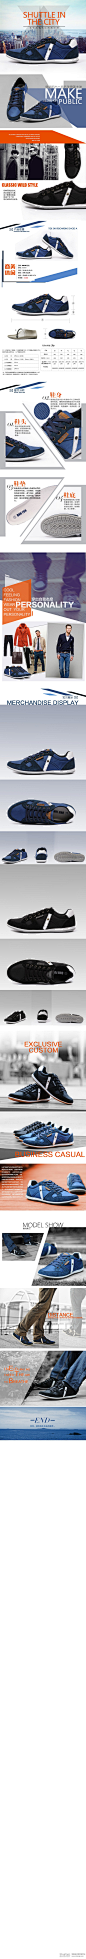 刚做好的公司自制商务休闲男鞋详情页,致设计-中国最大的电商设计师交流平台